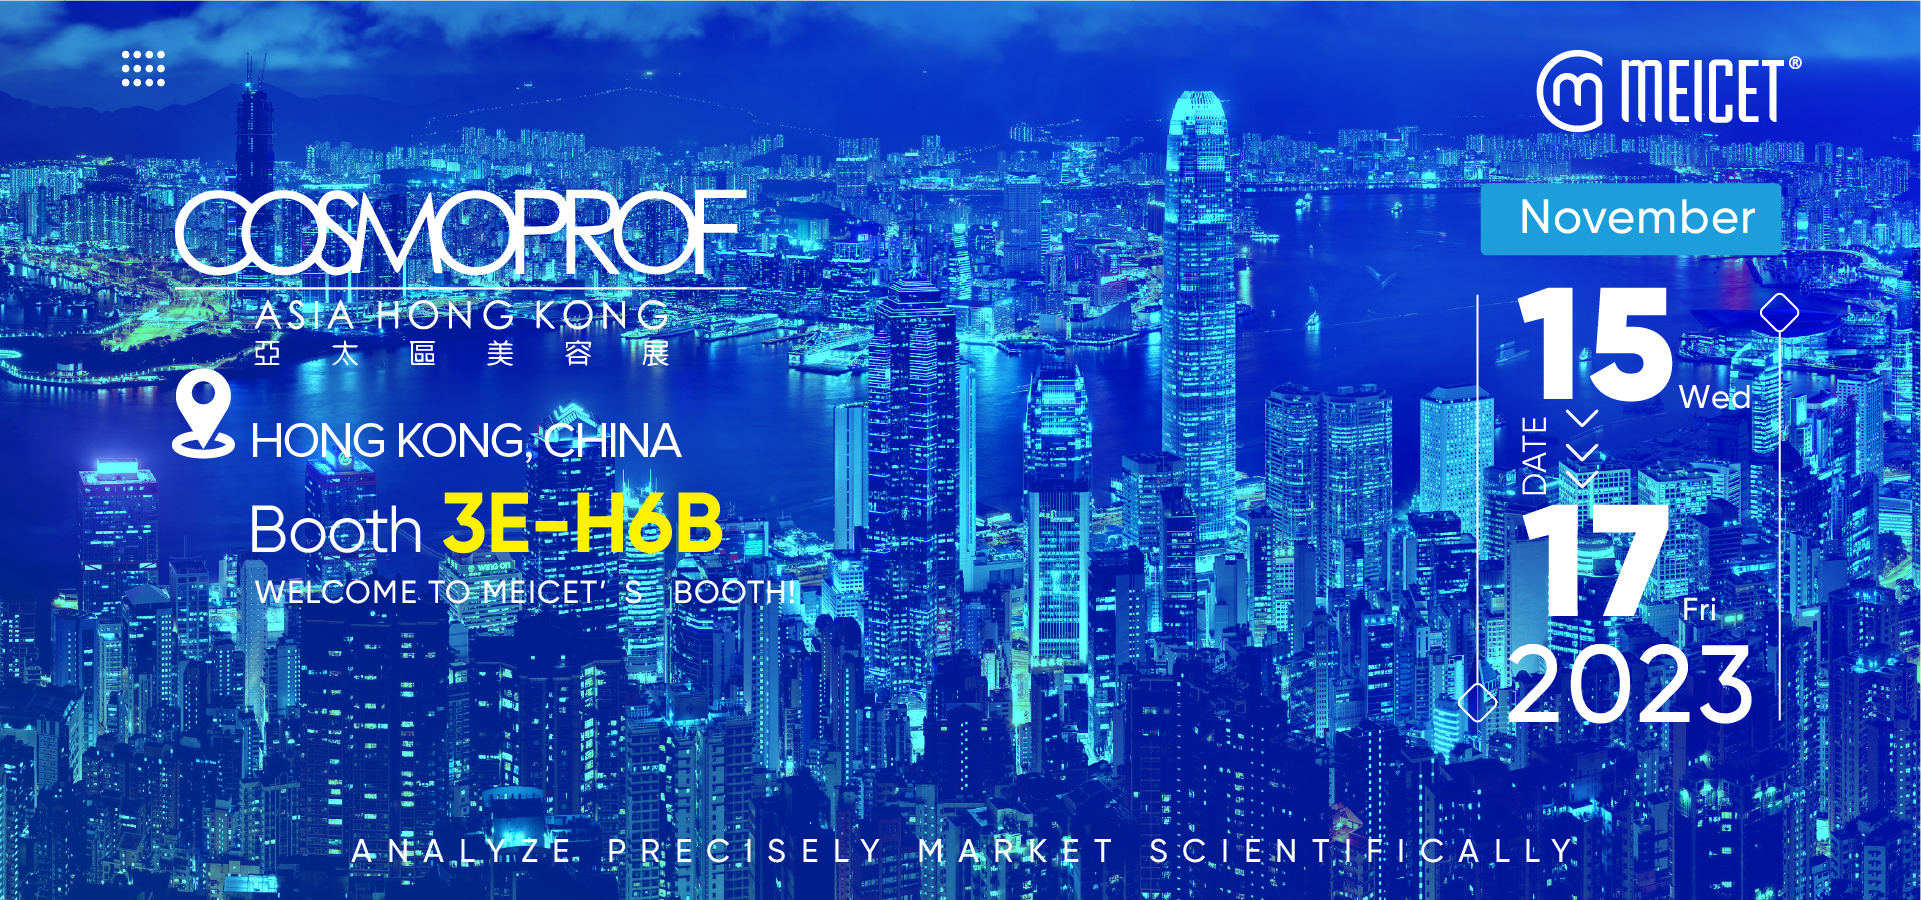 La máquina de análisis de piel MEICET exhibirá los dispositivos más vendidos en COSMOPROF Asia en Hong Kong